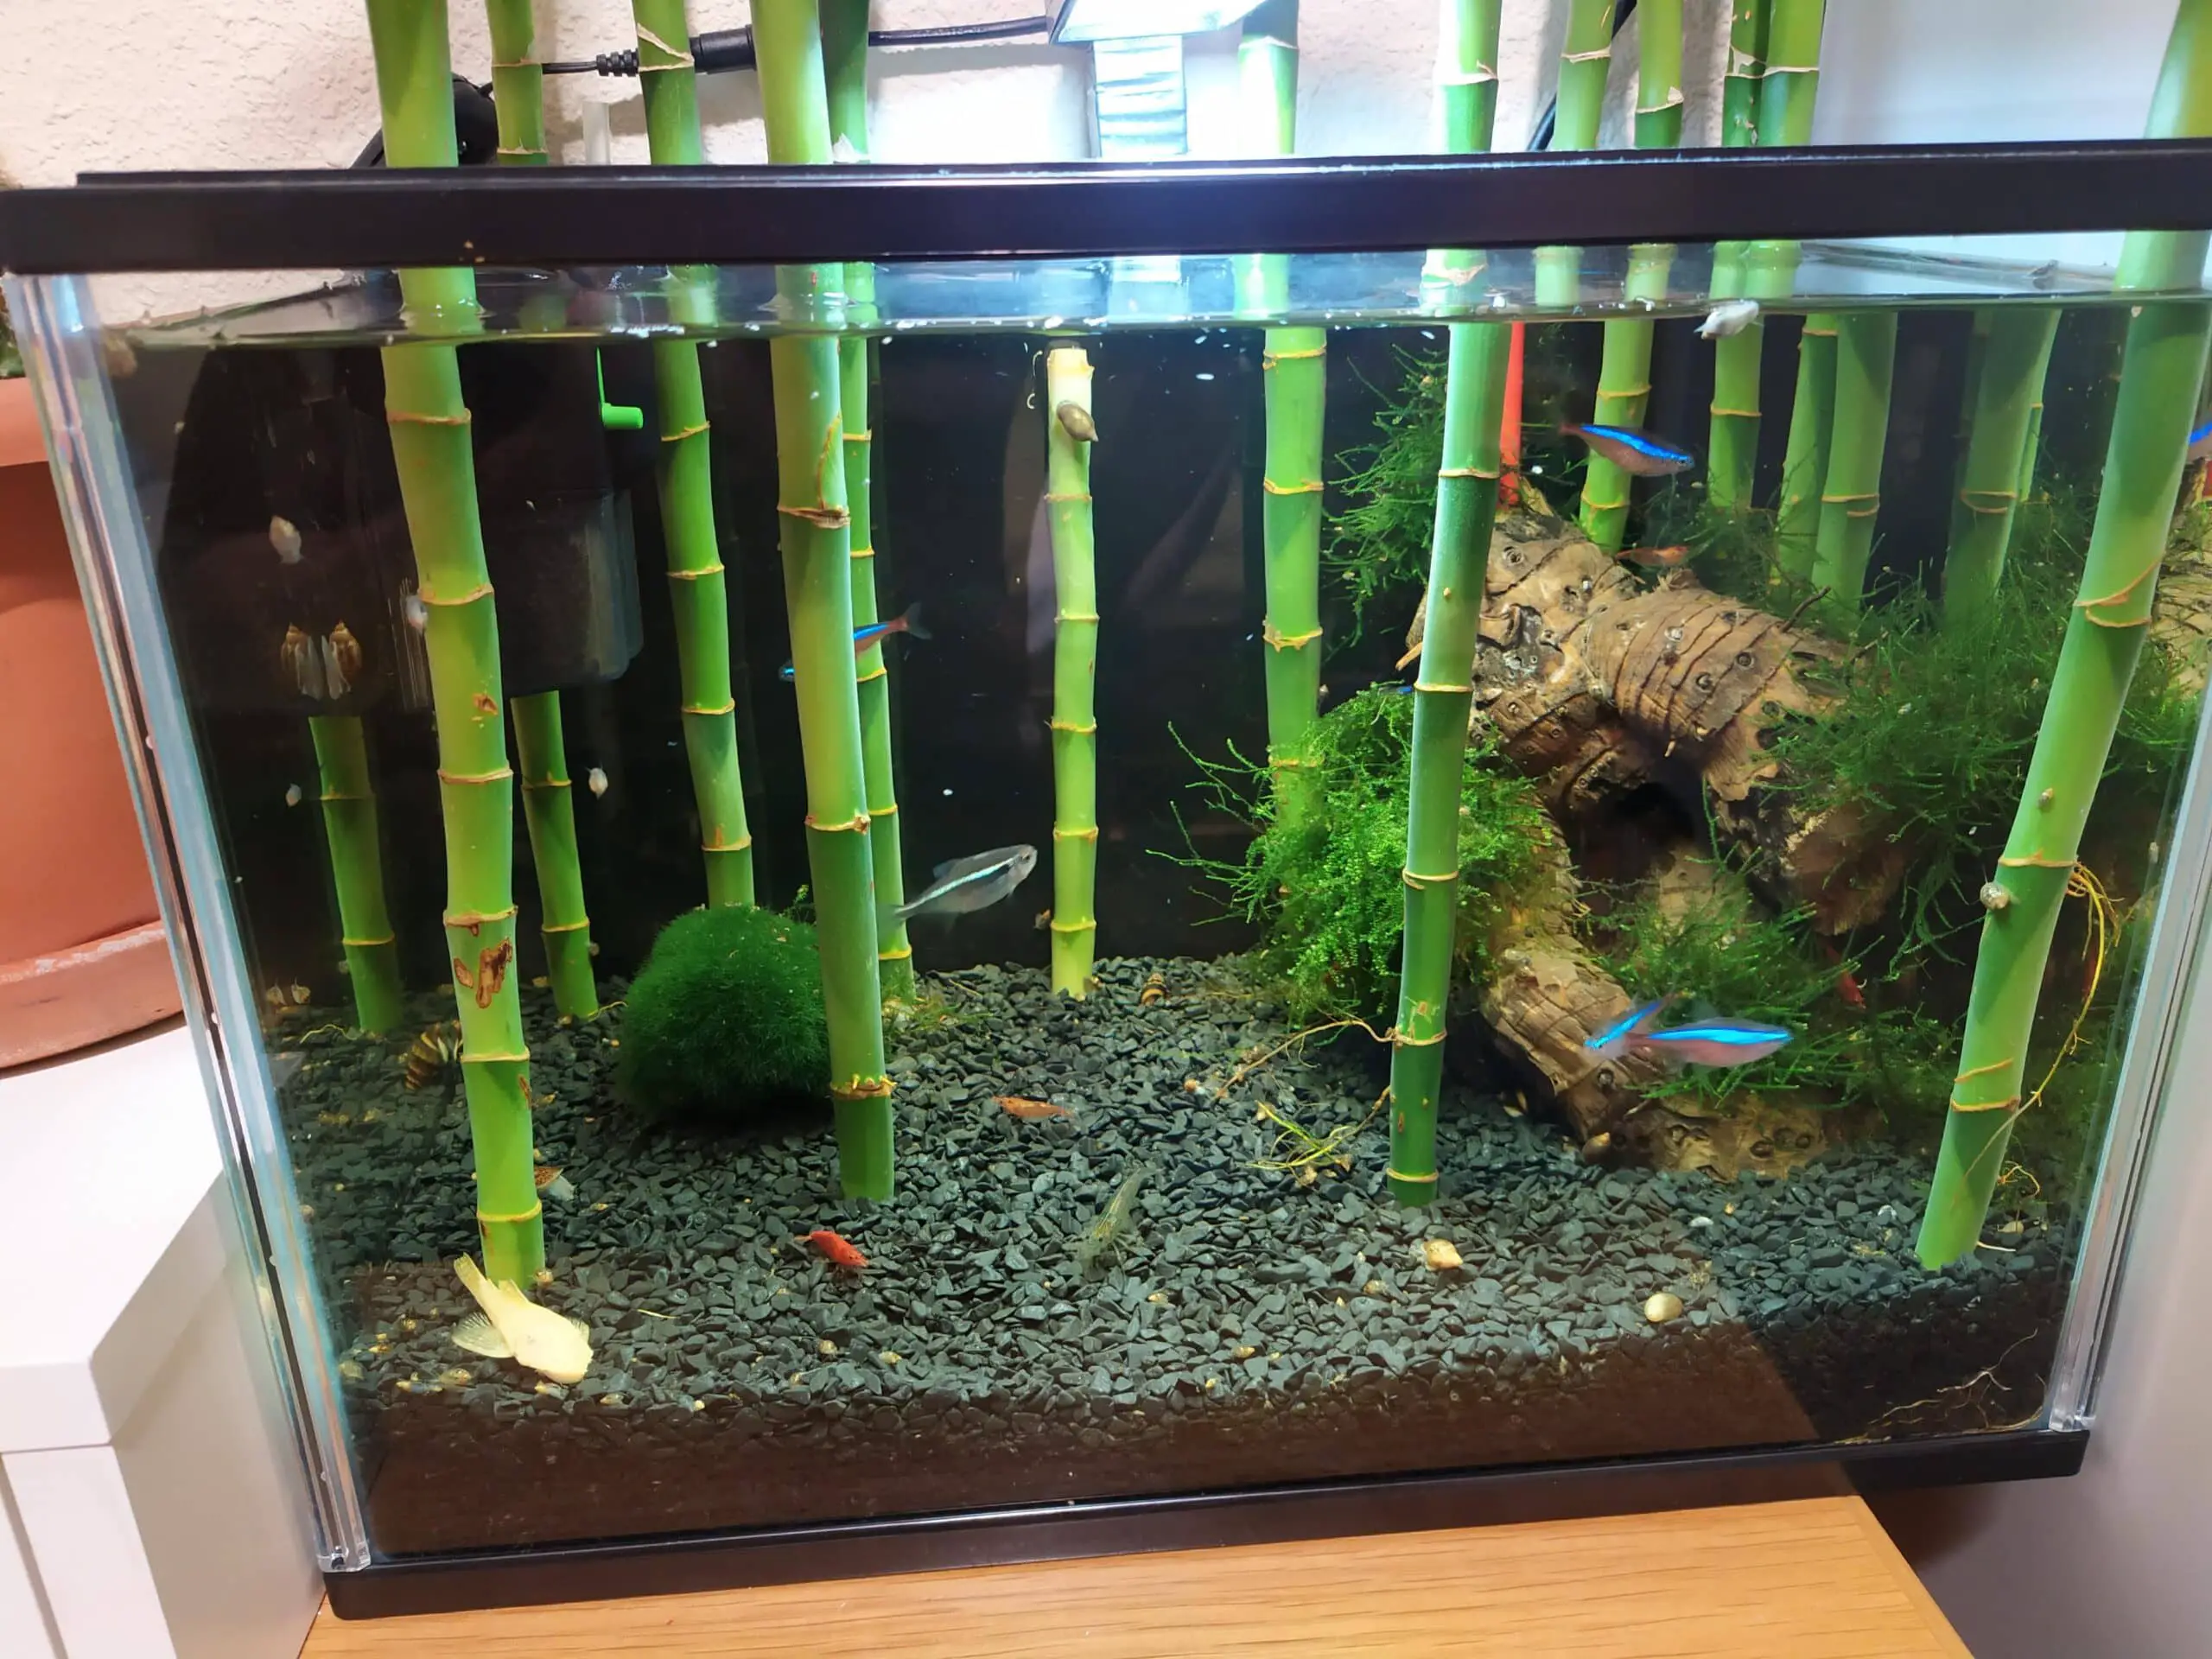 Bamboo in aquarium